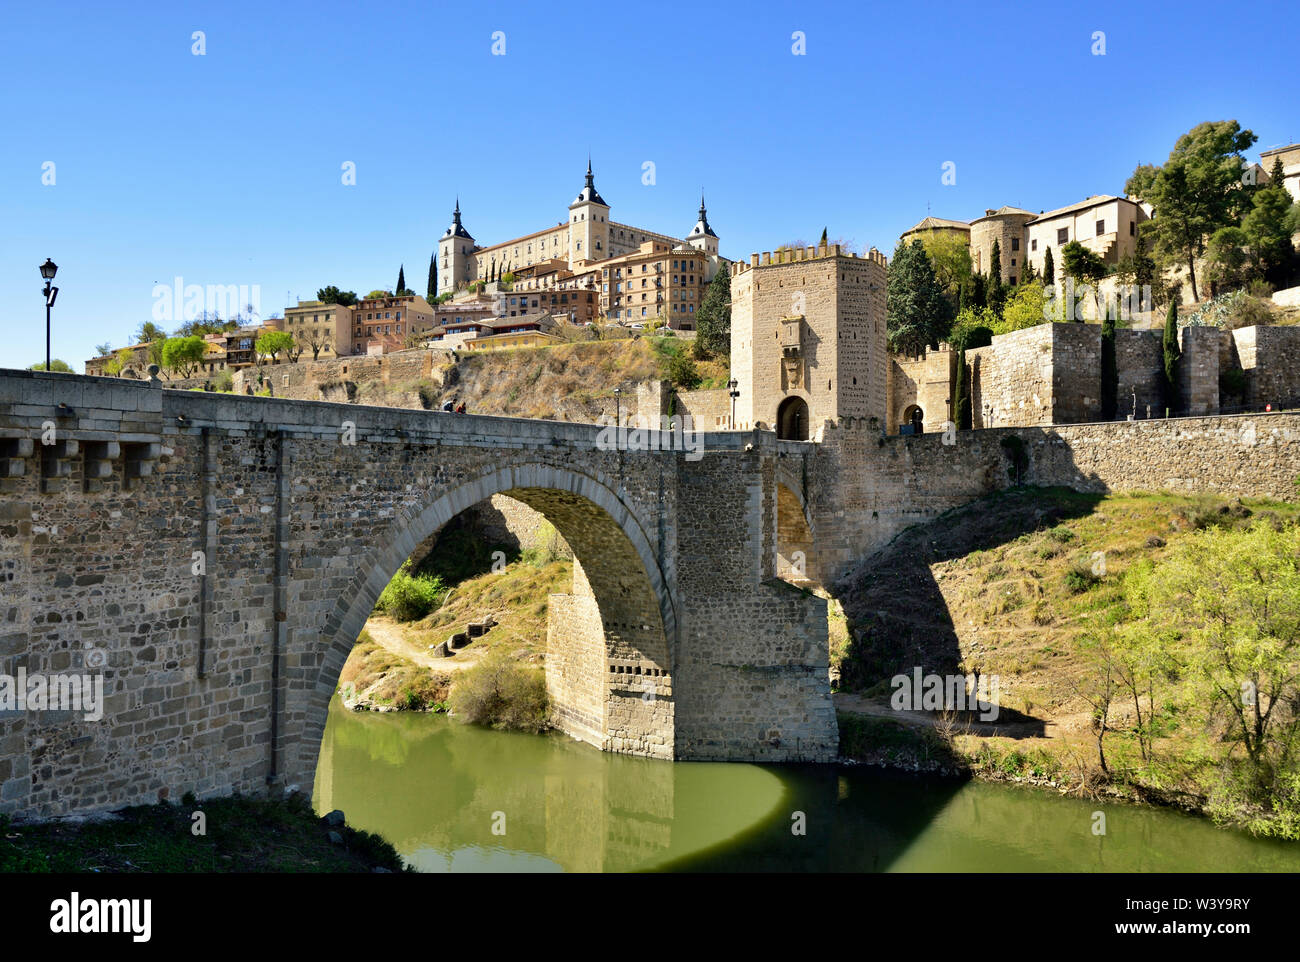 Die Puente de Alcantara Alcantara (Brücke) über den Tagus Fluss, eine römische Brücke, war Der obligatorische Eintrag für alle Pilger im Mittelalter. Ein UNESCO-Weltkulturerbe, Toledo. Castilla la Mancha, Spanien Stockfoto